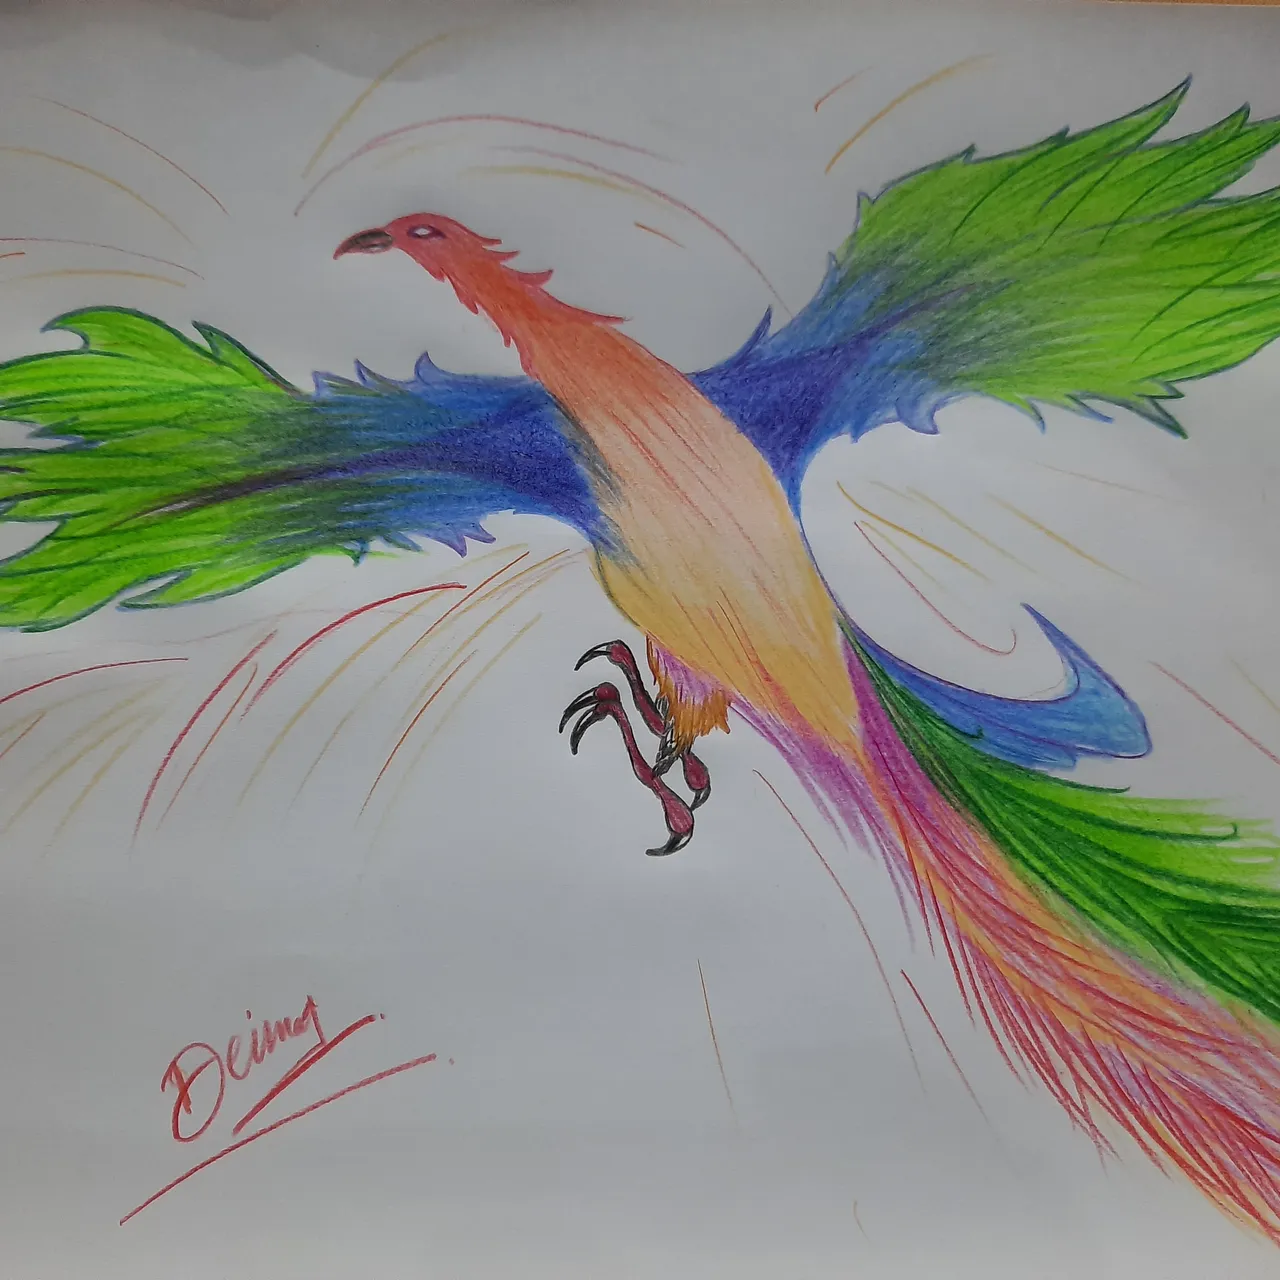 Buy Phoenix Bird Watercolor Online In India - Etsy India